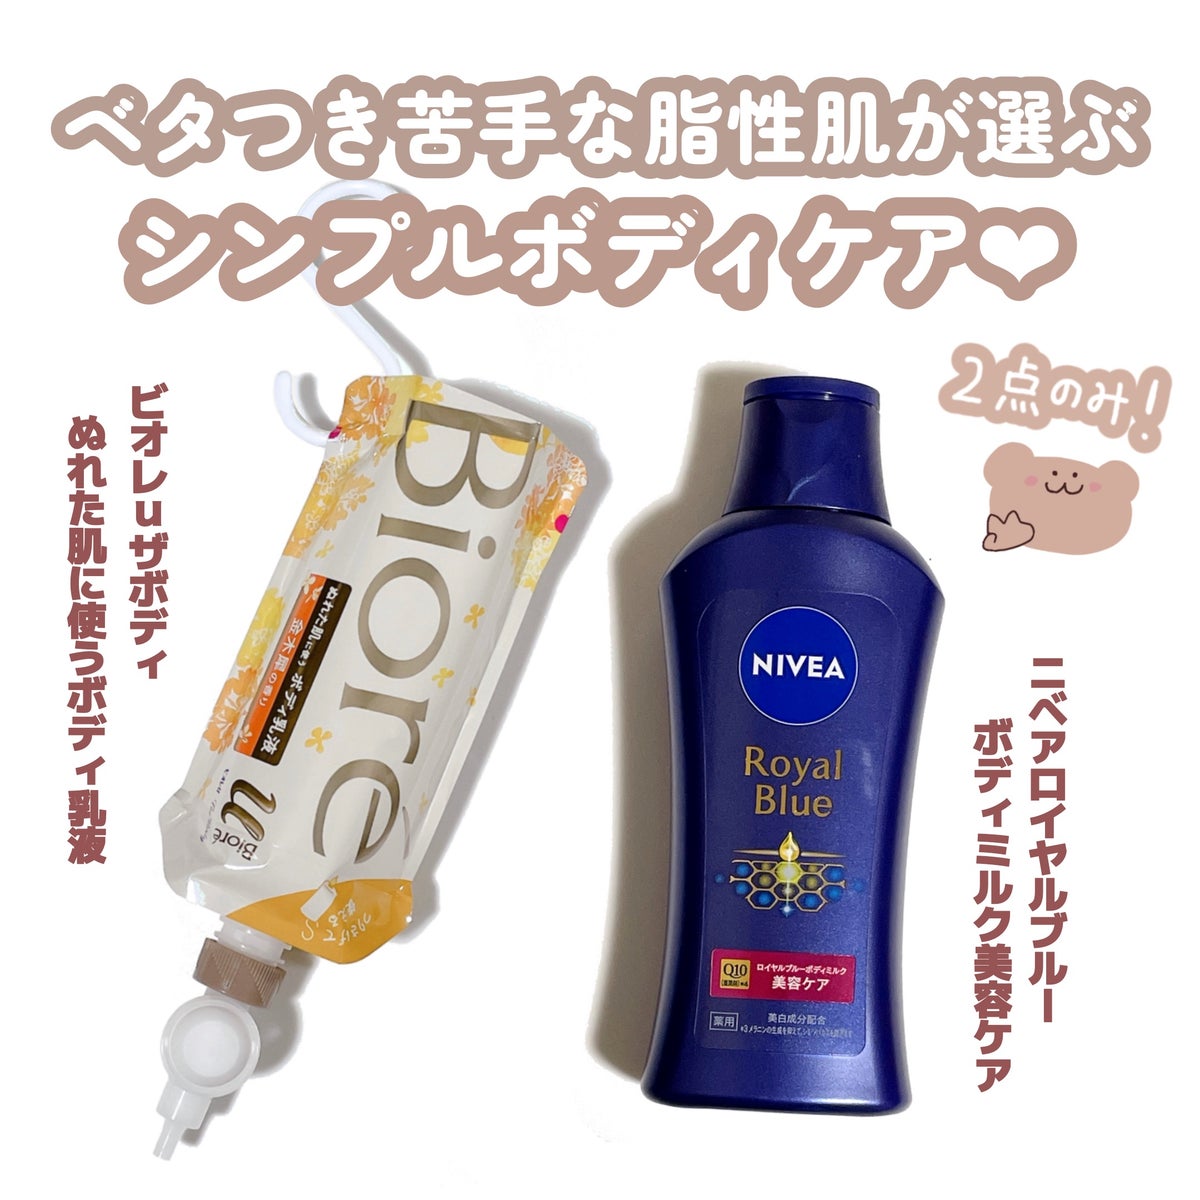 ニベア ロイヤルブルーボディミルク 美容ケア/ニベア/ボディミルクを使ったクチコミ（1枚目）